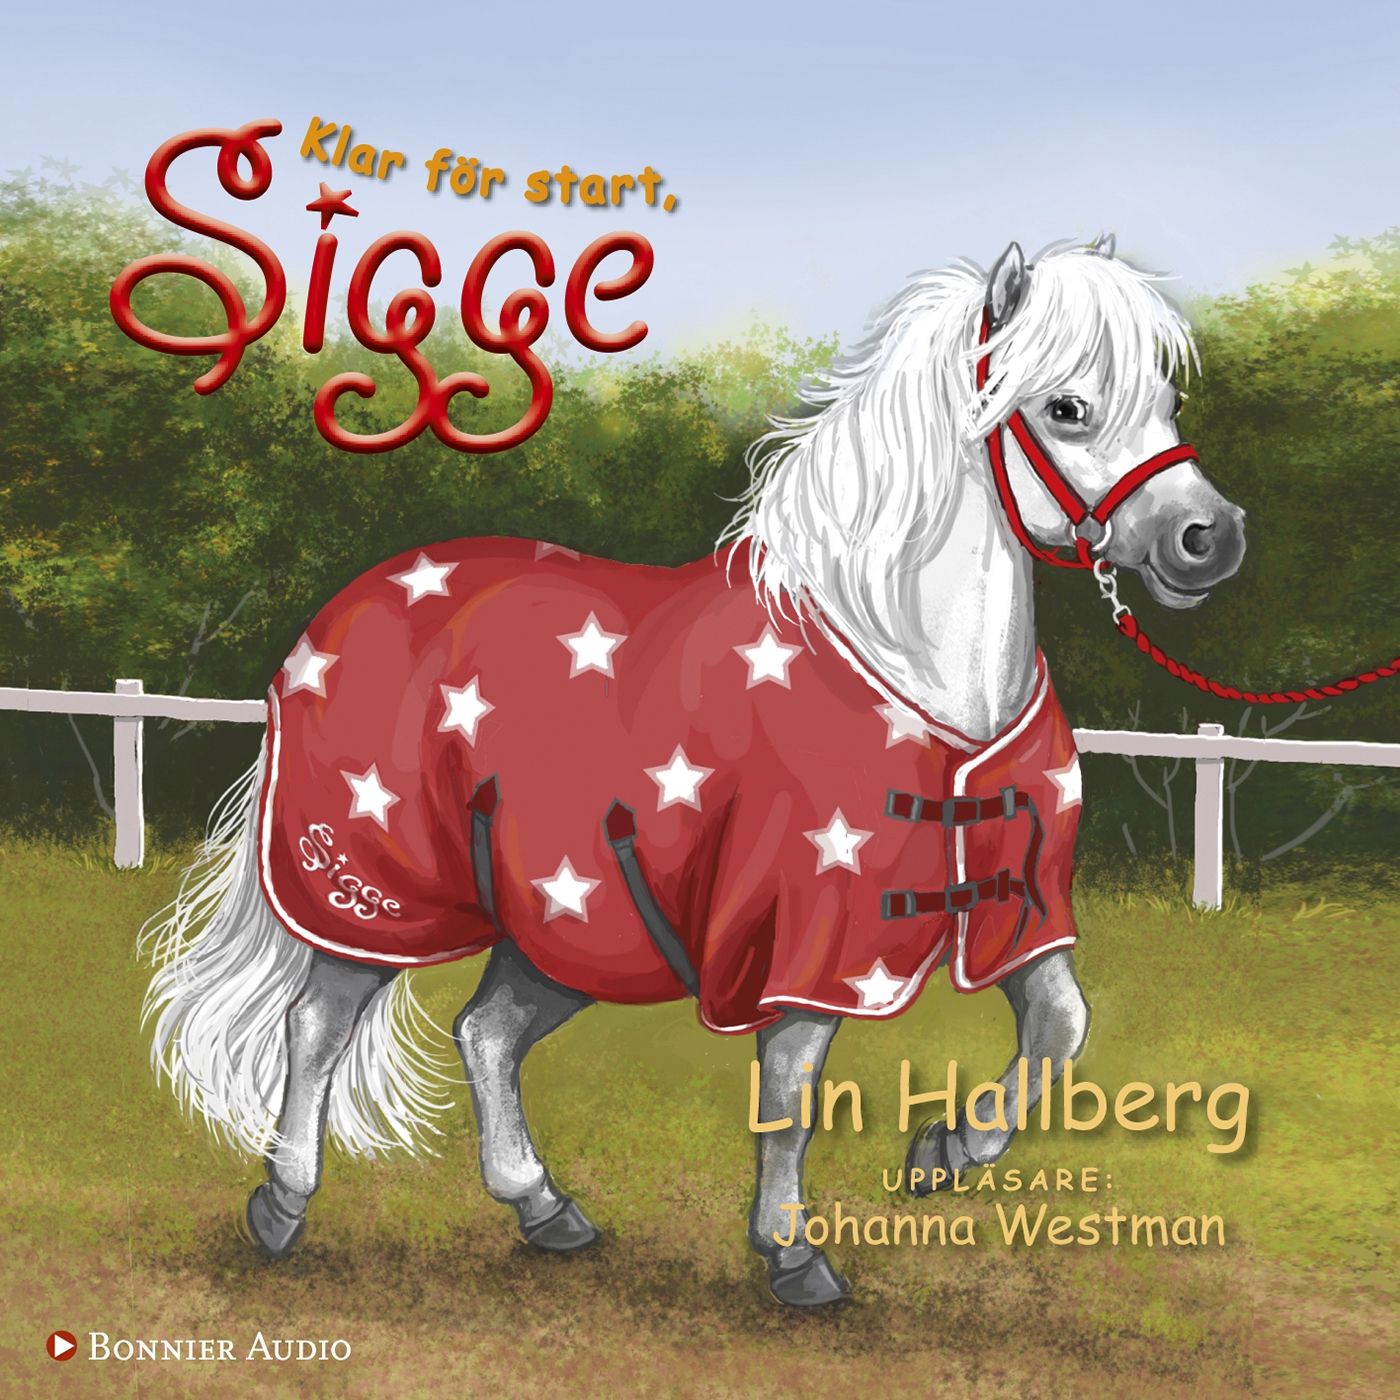 Klar för start, Sigge, audiobook by Lin Hallberg